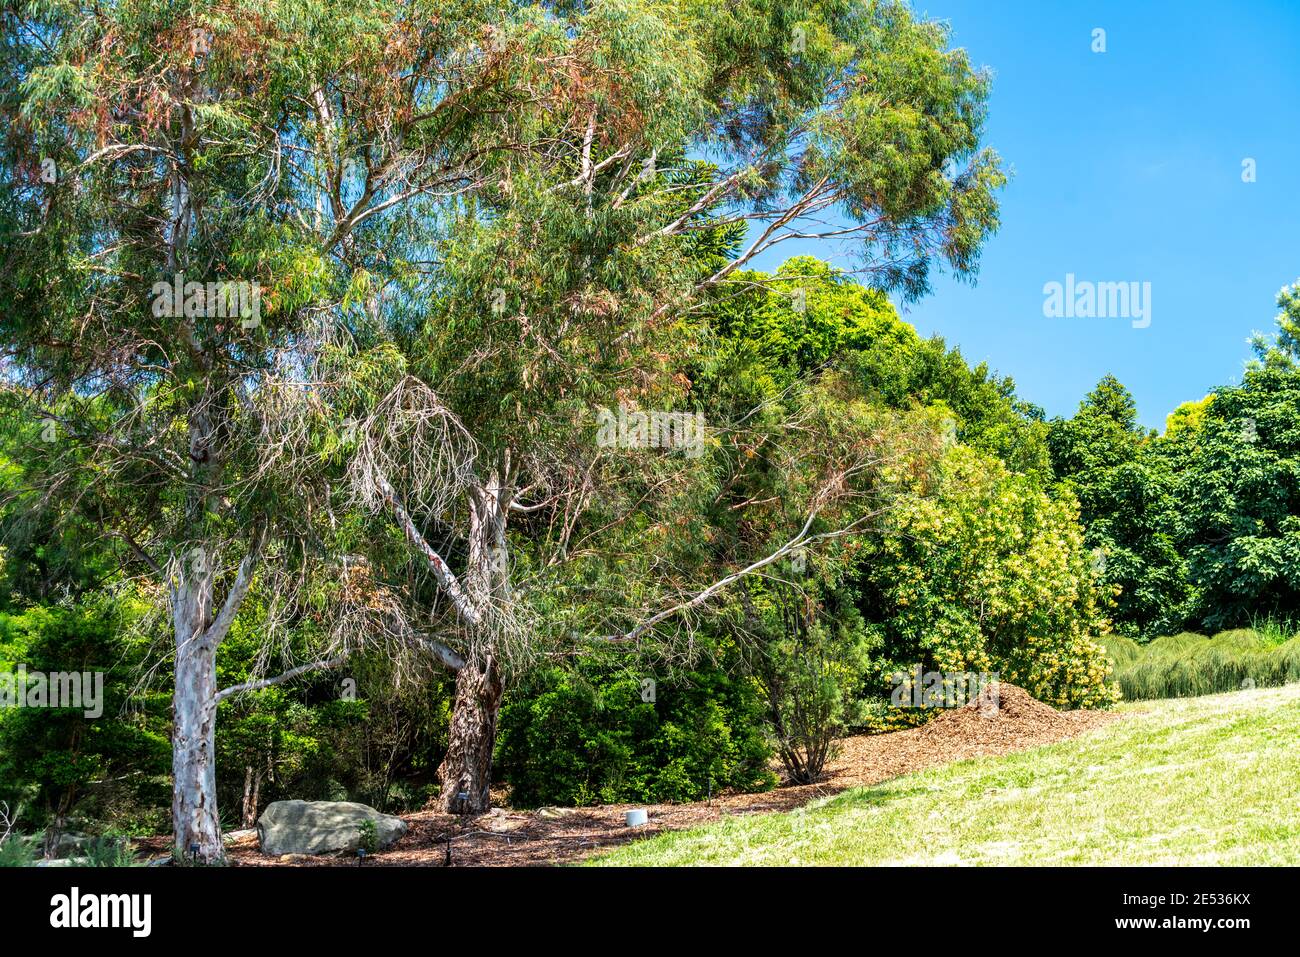 A garden of Australian Native trees Stock Photo